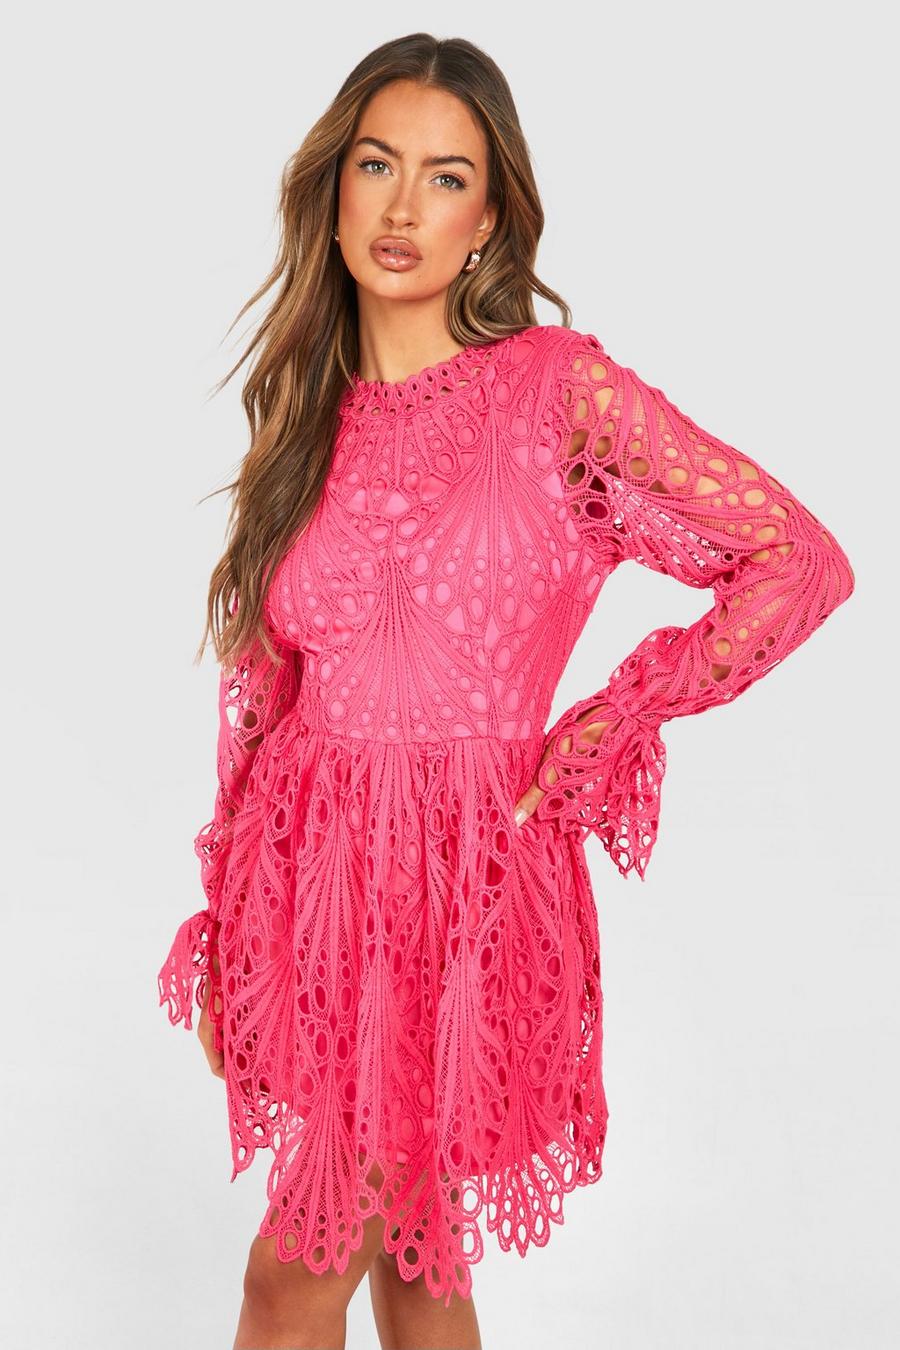 Hochgeschlossenes Skater-Kleid aus Spitze mit weiten Ärmeln, Hot pink